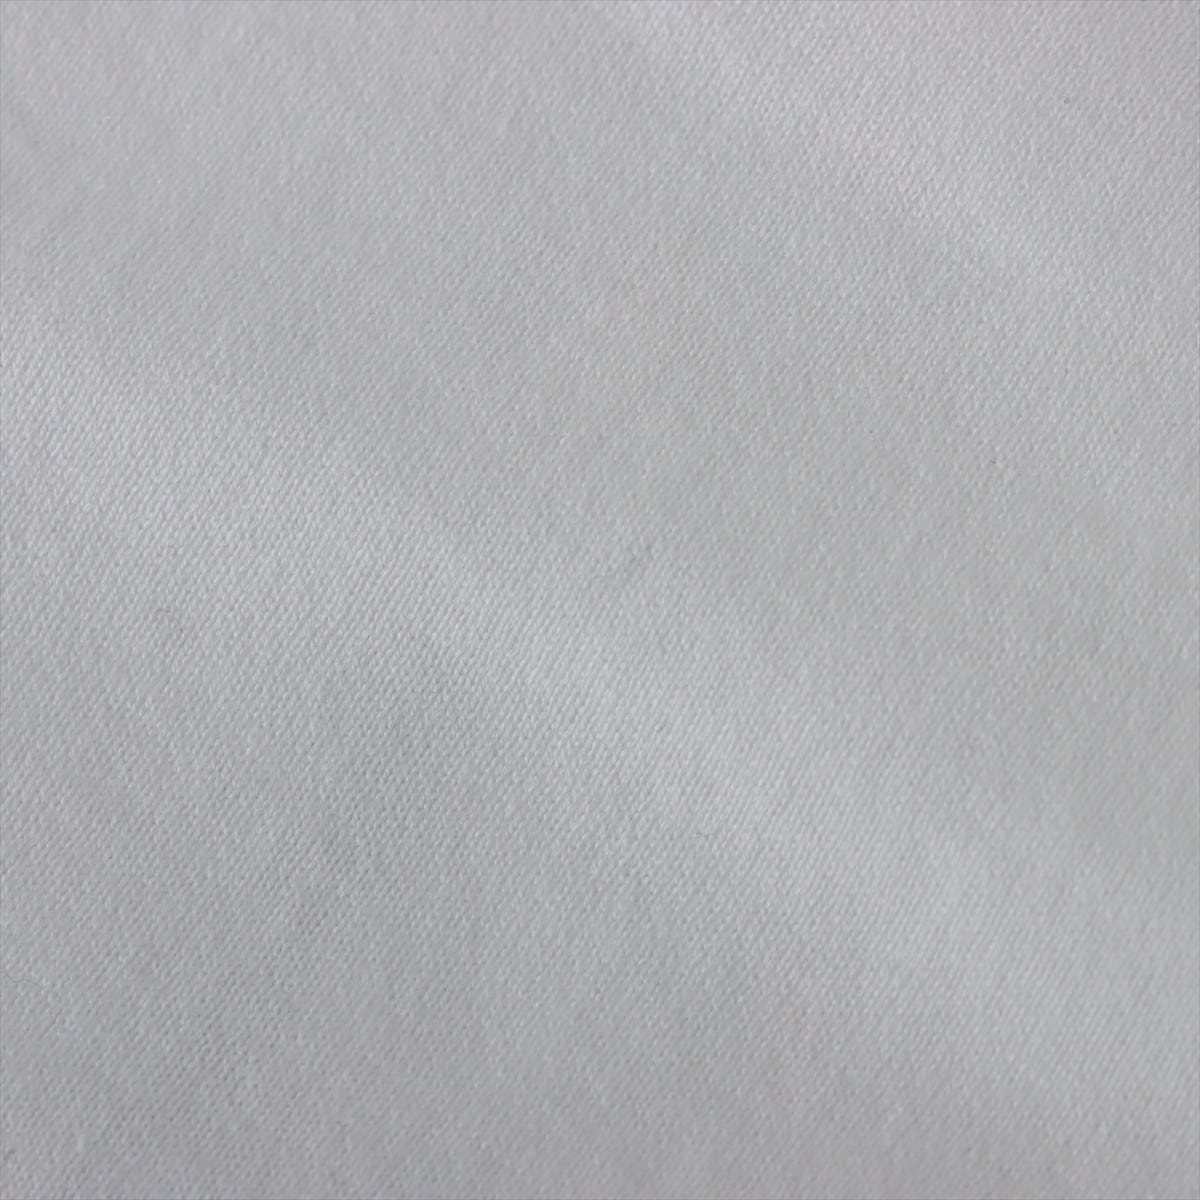 ジバンシィ コットン Tシャツ S メンズ ホワイト  BM70Y73002